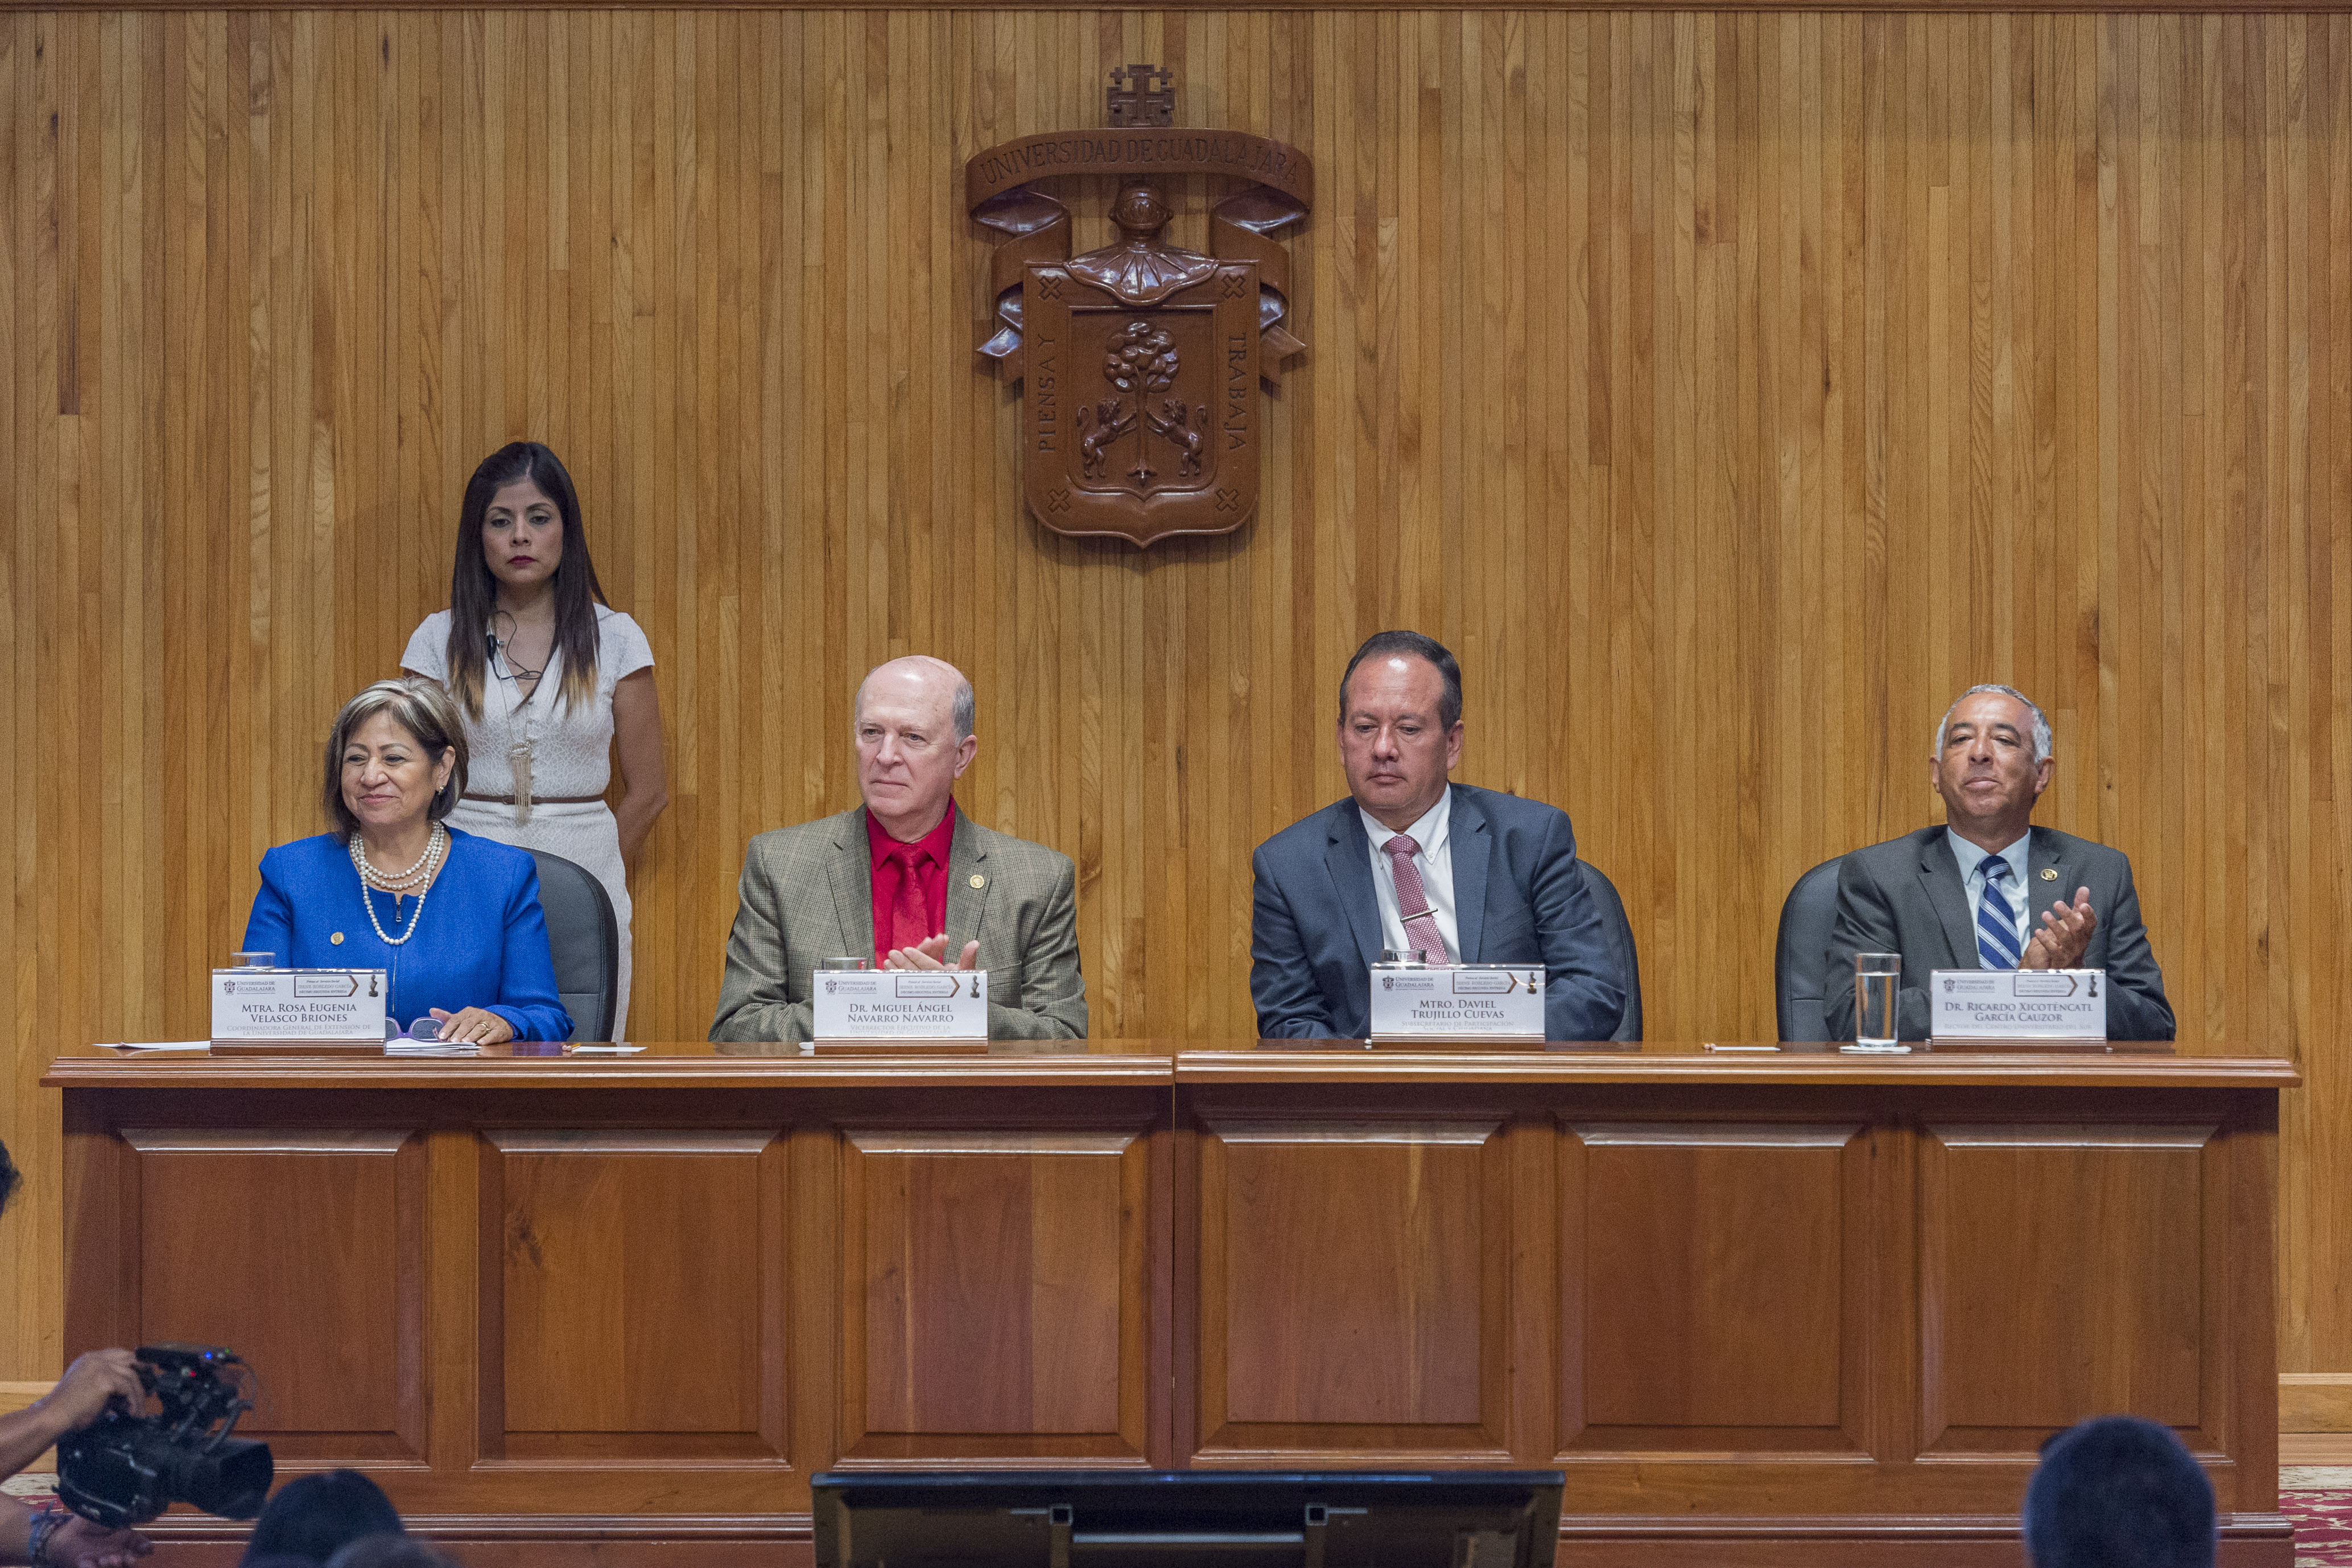 Miebros del presídium en la ceremonia de entrega de la Presea Irene Robledo García